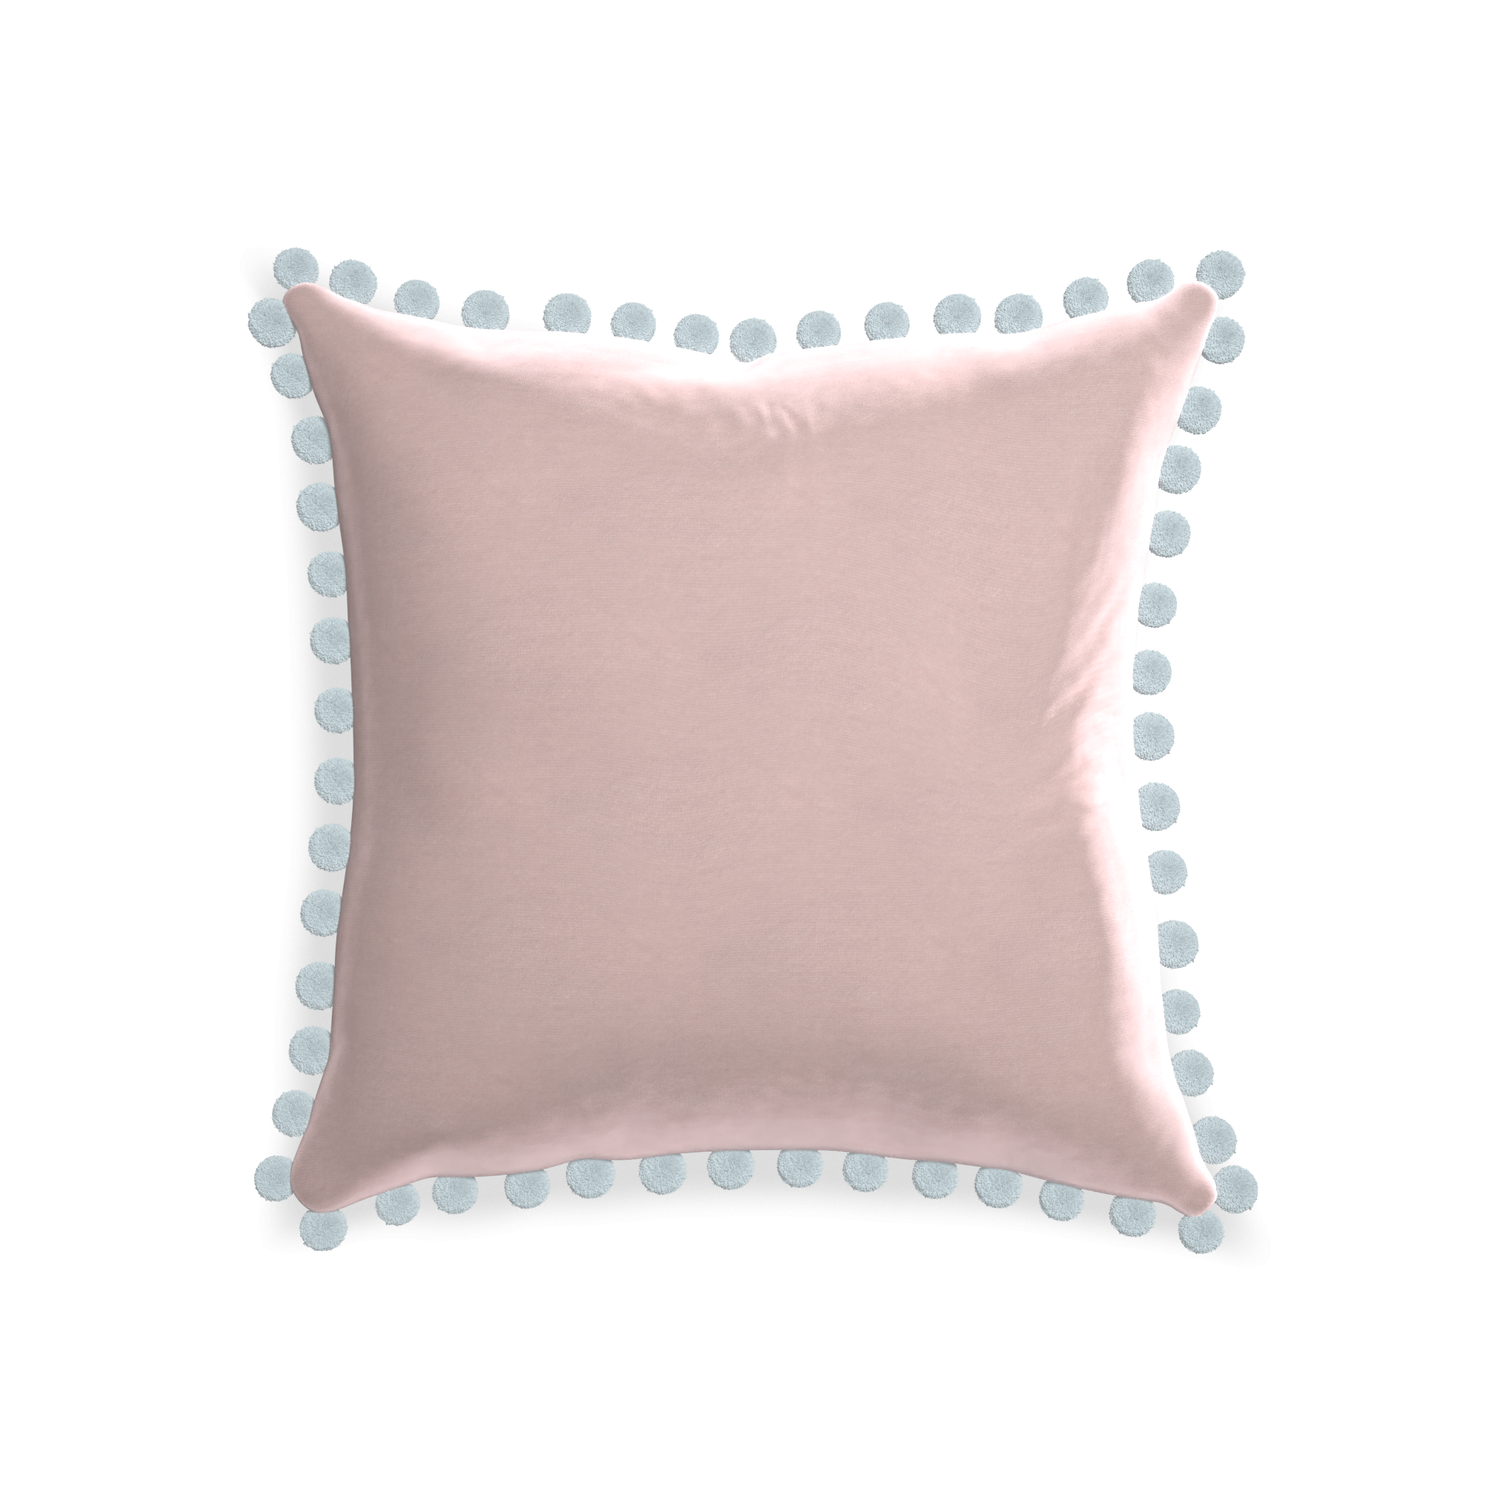 20-square rose velvet custom pillow with powder pom pom on white background